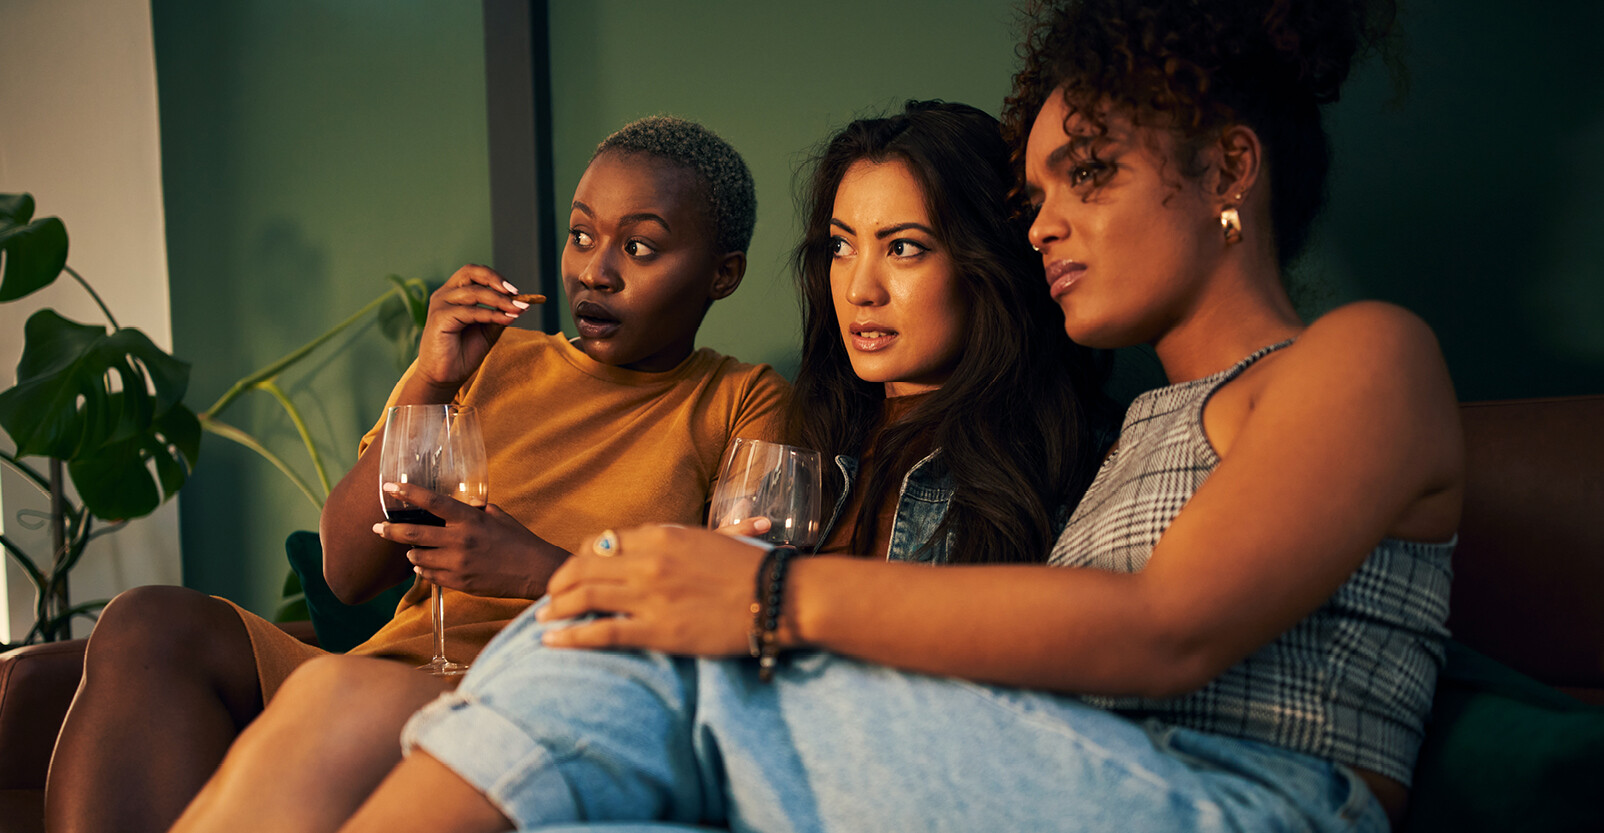 vrouwen op de bank verbaast kijken naar tv scherm popcorm wijn vriendinnen